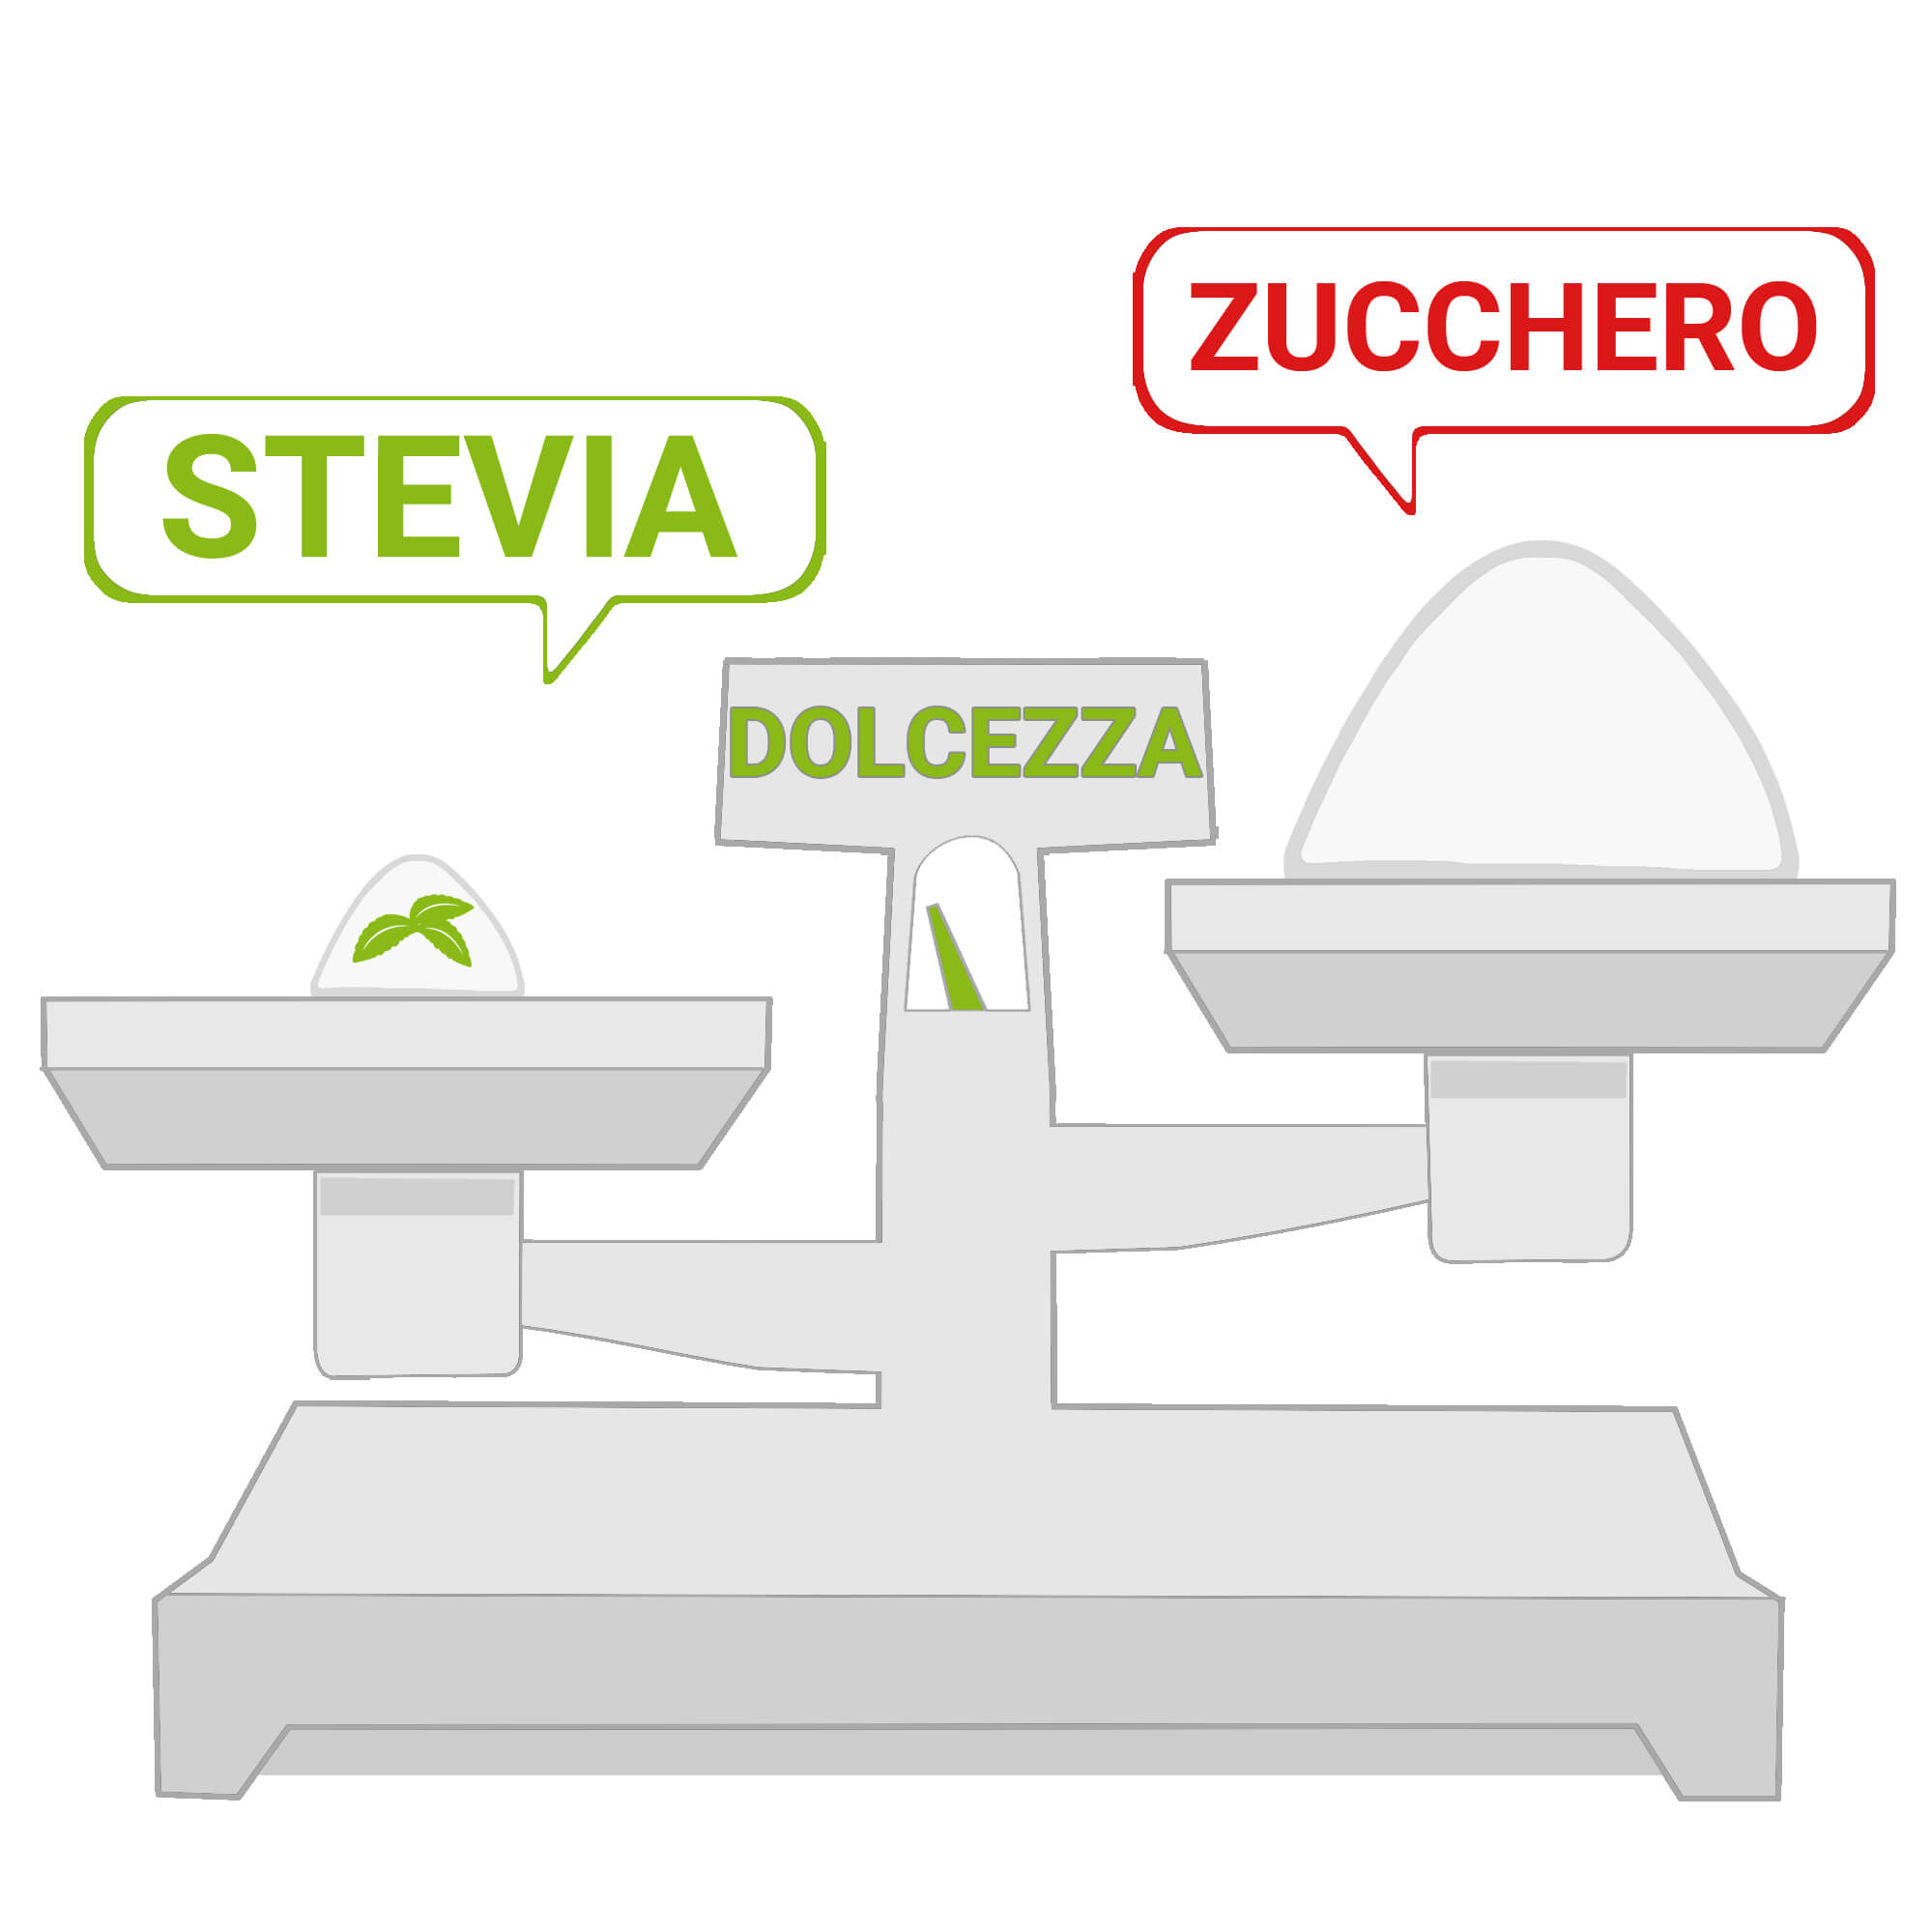 Il corretto dosaggio della Stevia